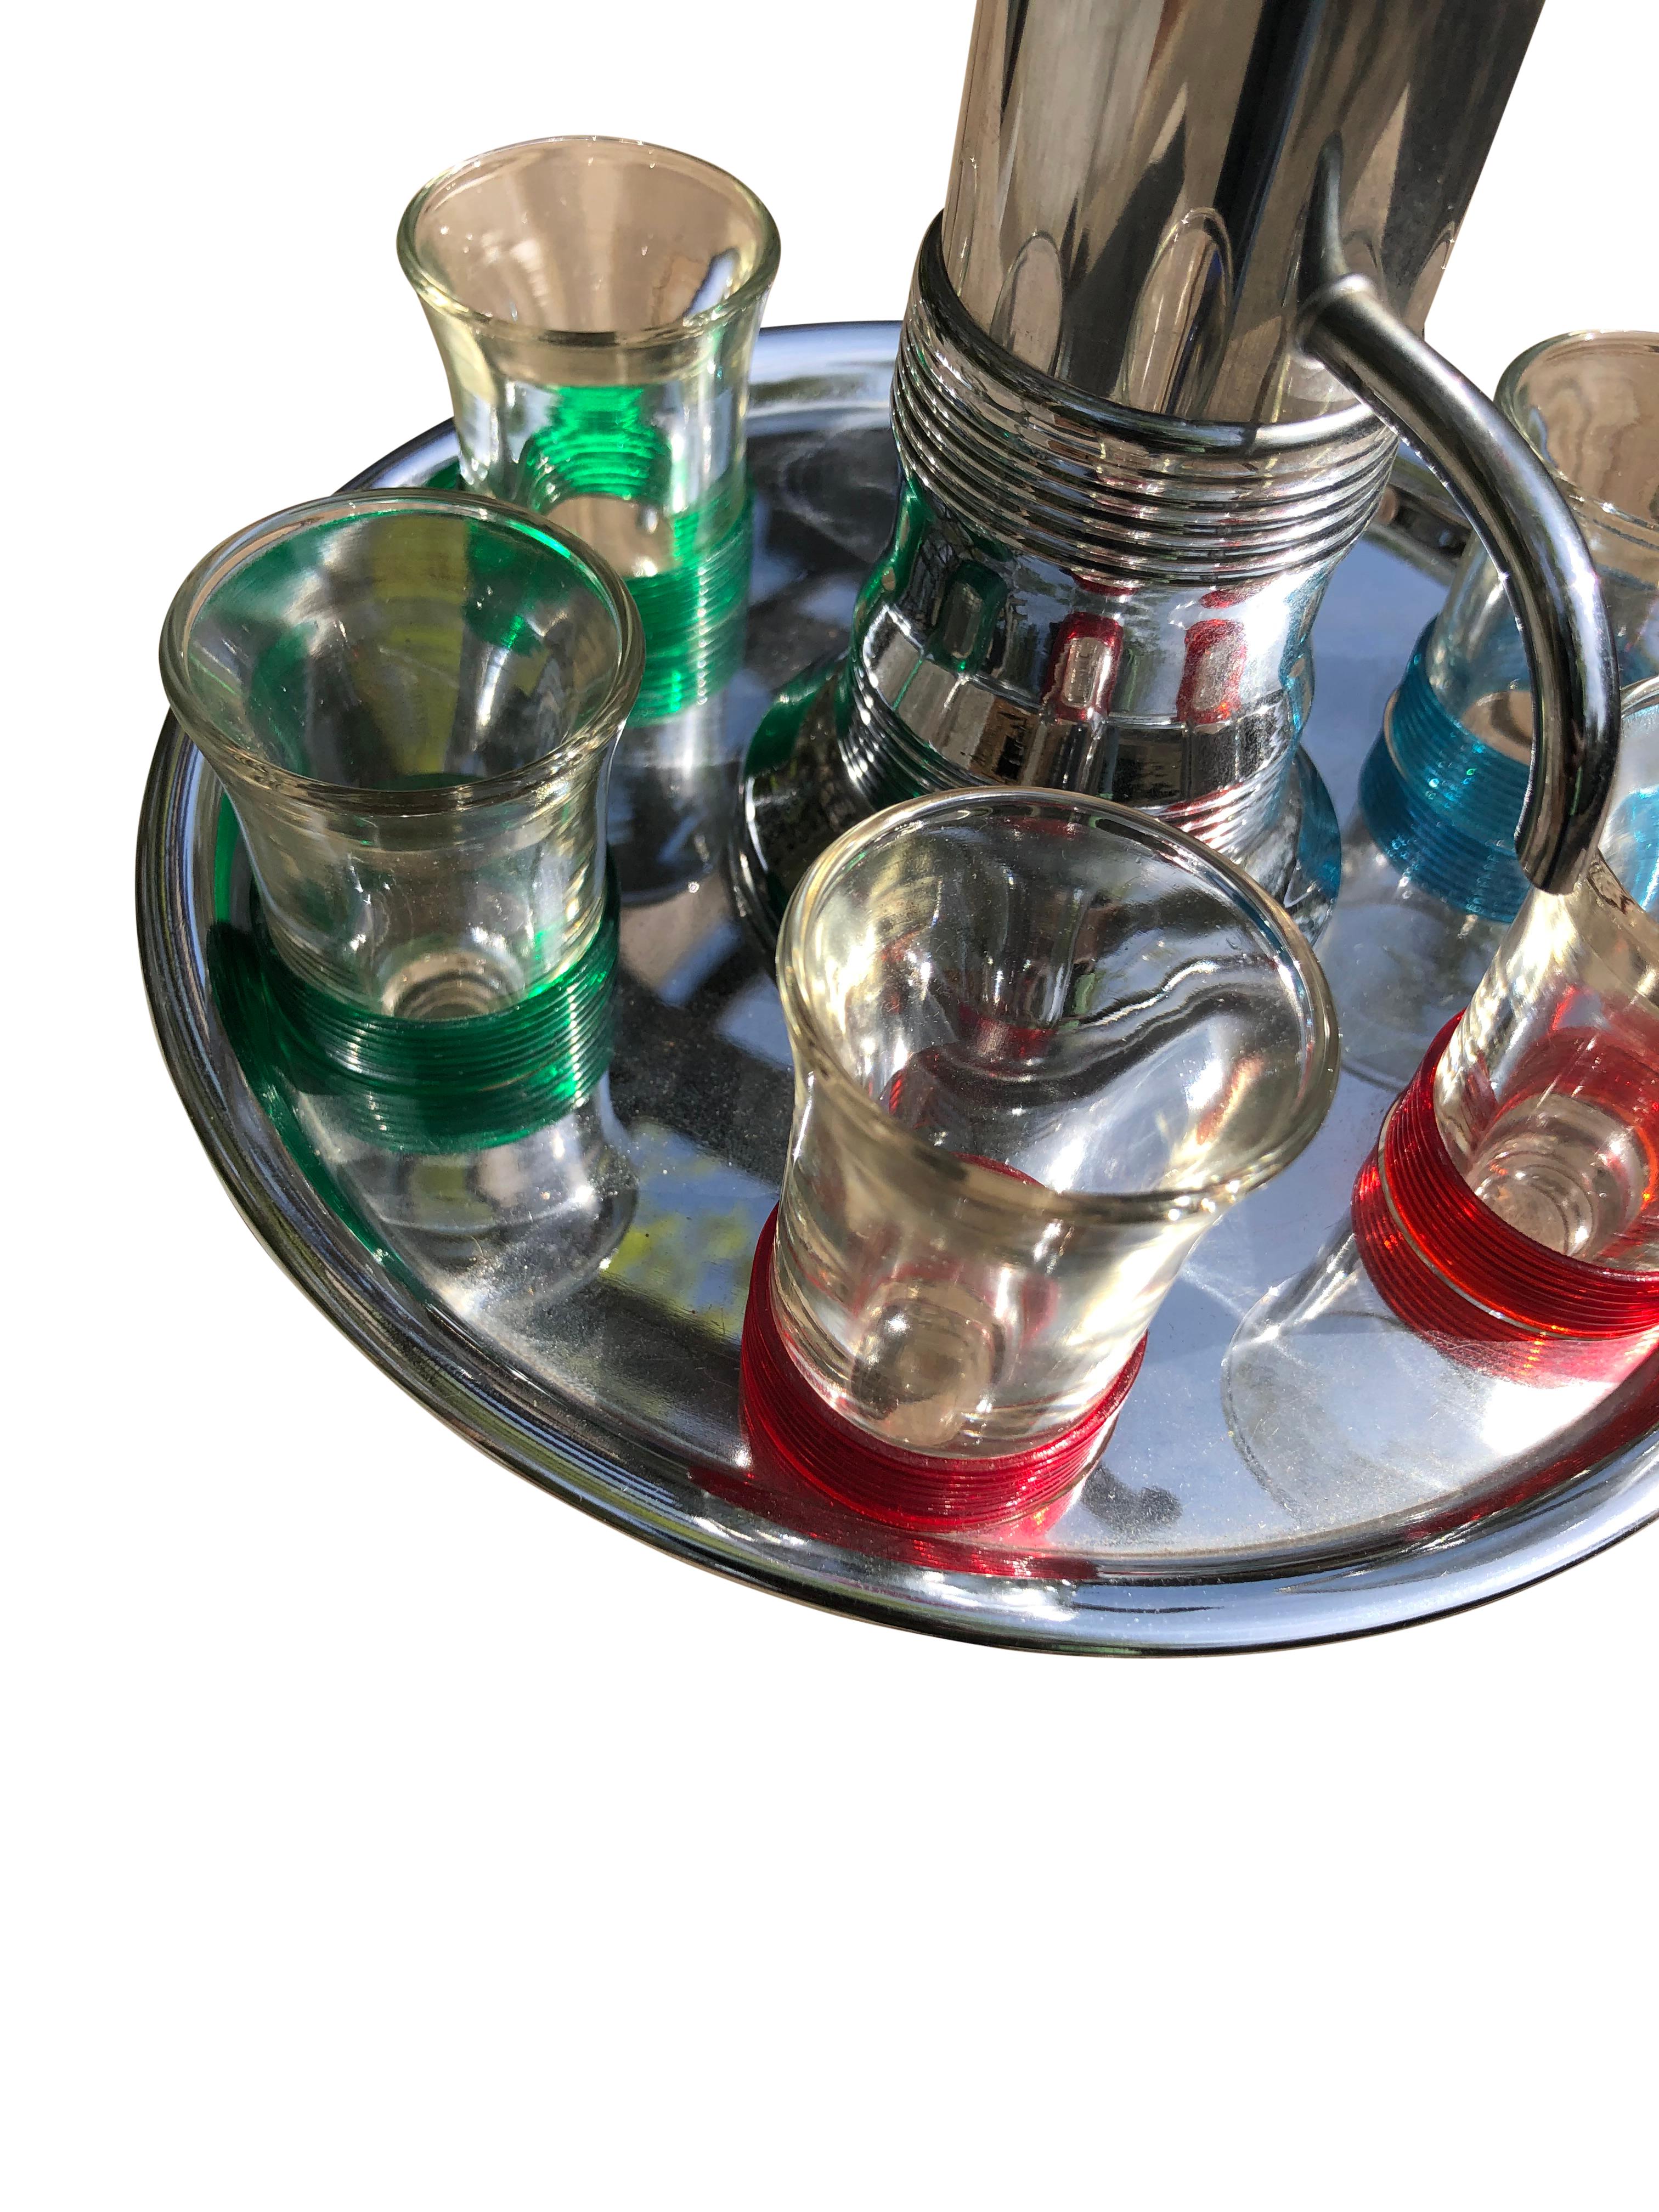 Vintage Mid-Century Carousel Liquor Dispenser with Set of 6 Shot Glasses sitting on a circular chrome plate with 6 cut-out slots to hold the shot glasses. Les verres à liqueur sont groupés par paires avec des bandes de couleur assortie. Il y a deux